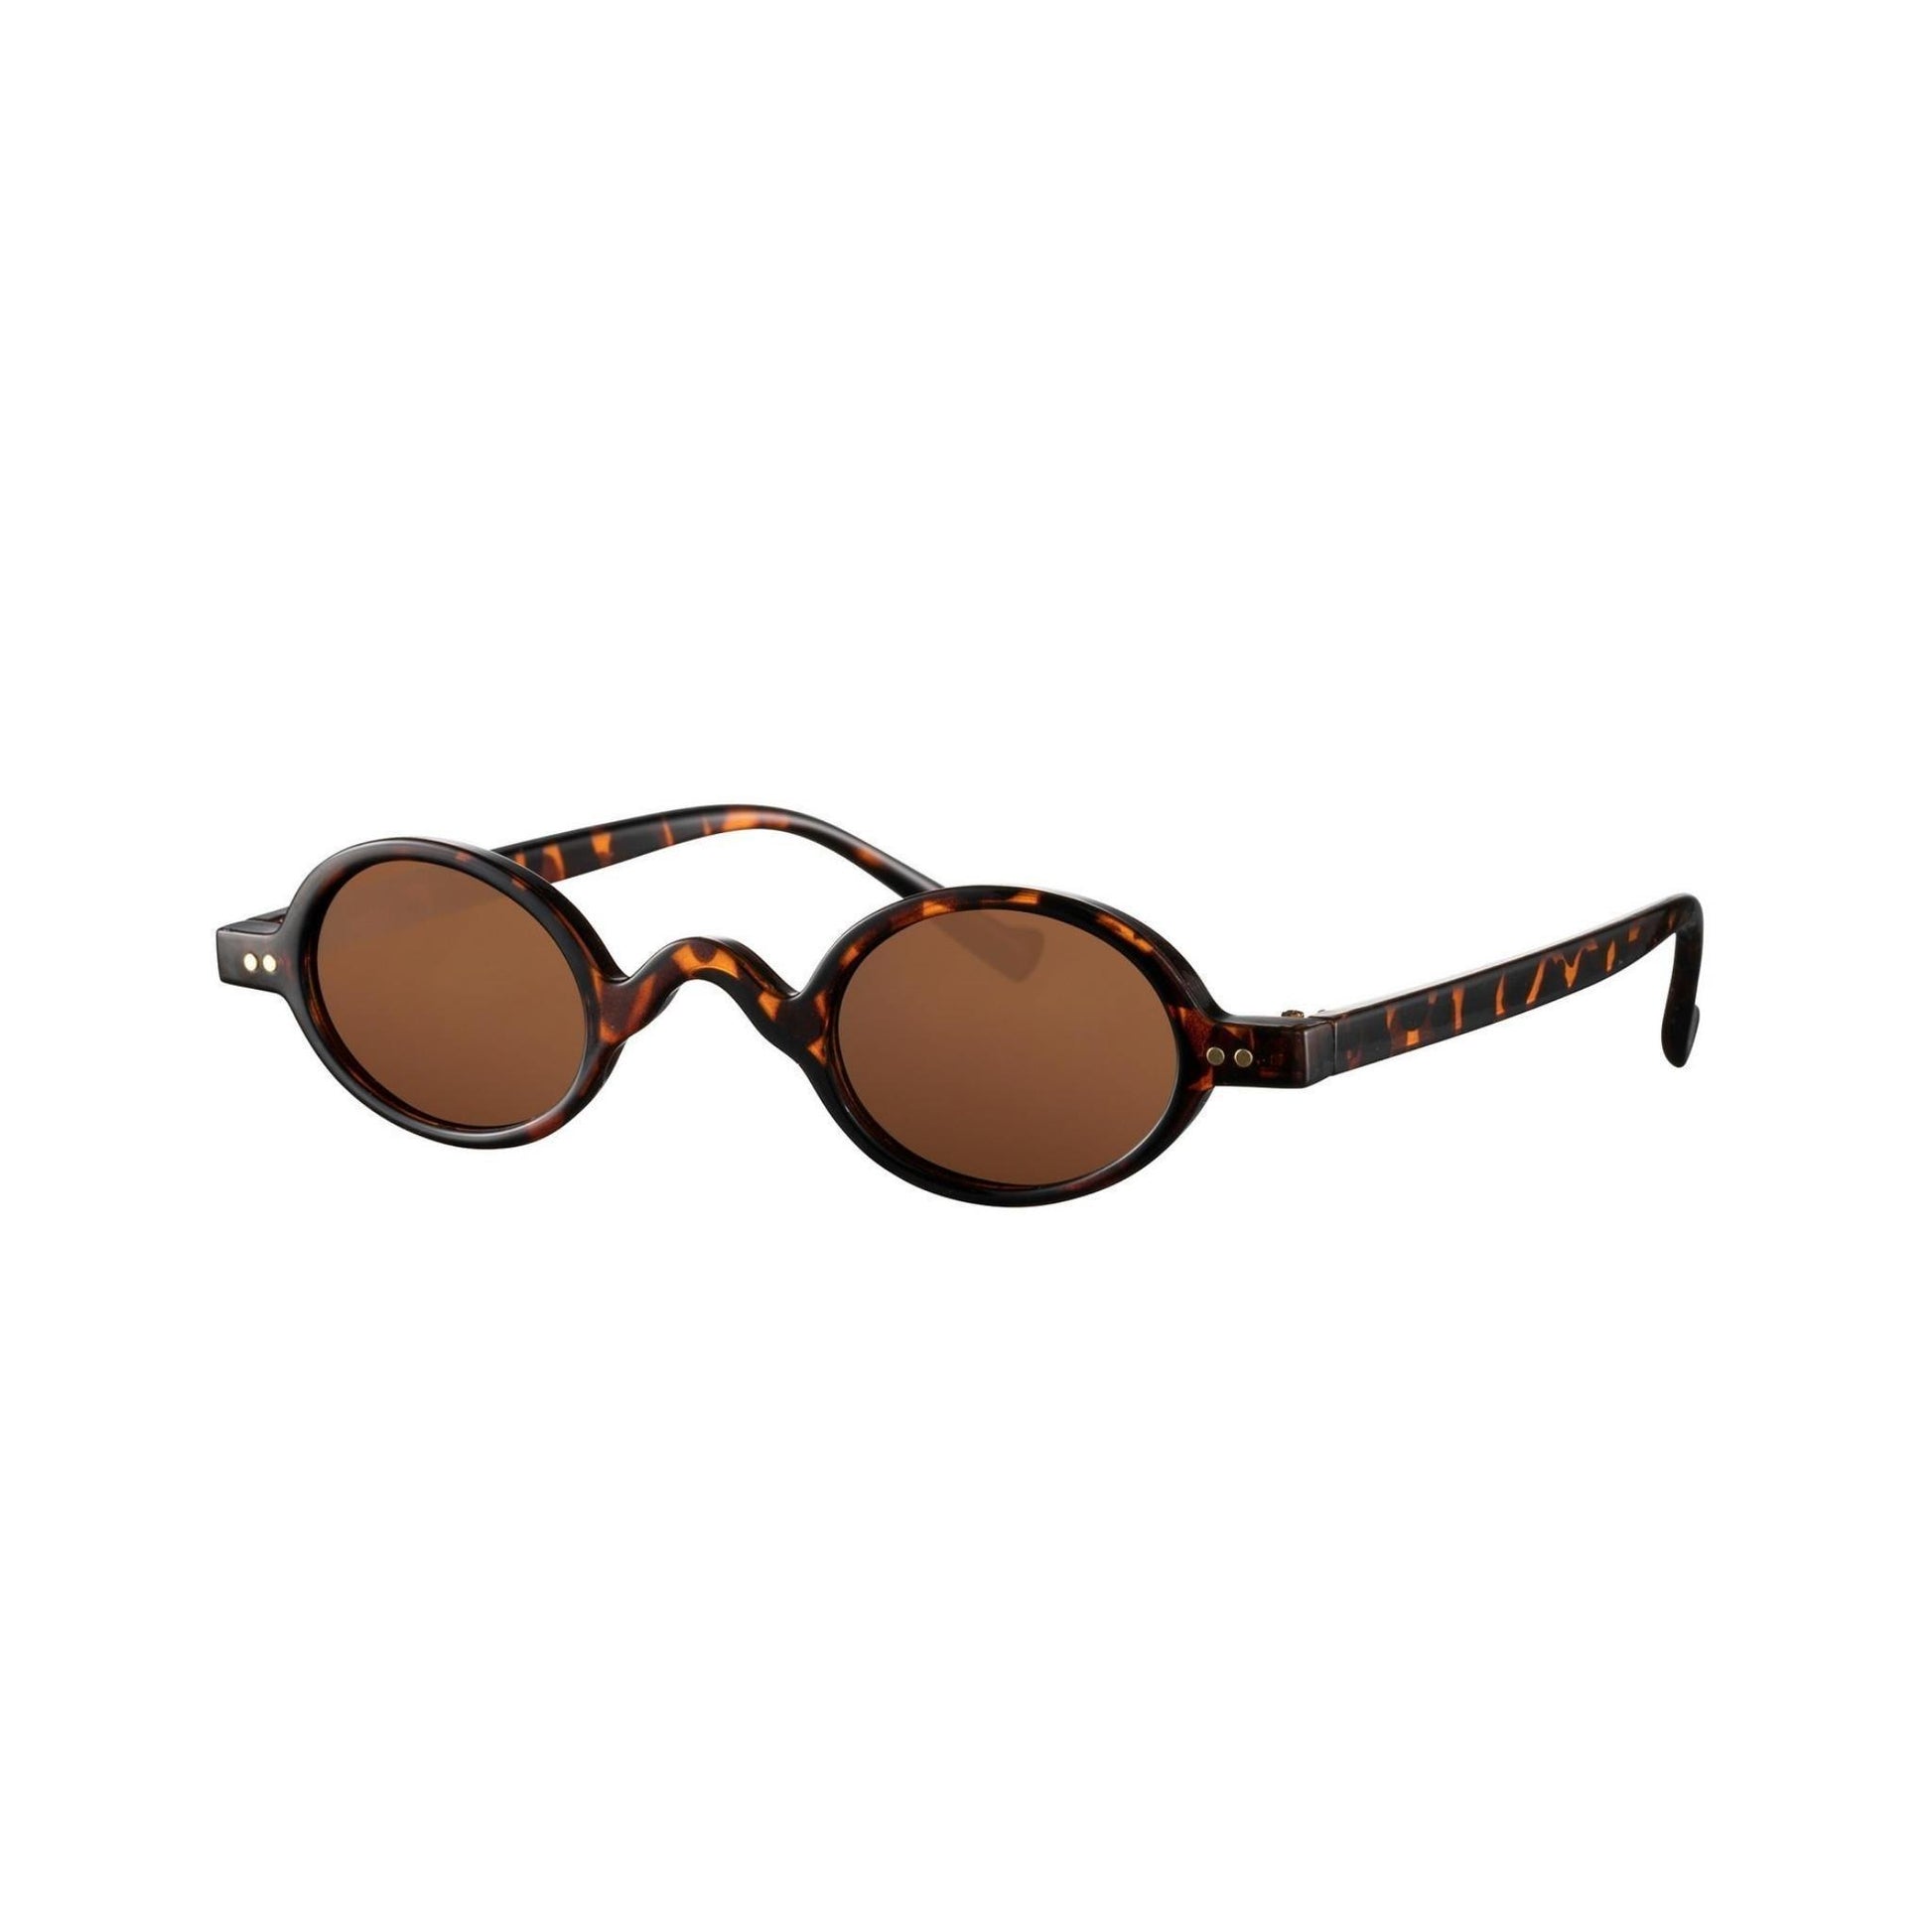 Γυαλιά ηλίου (στρογγυλά) Monaco της Exposure Sunglasses με προστασία UV400 με καφέ σκελετό και καφέ φακό.Πλάγια προβολή.